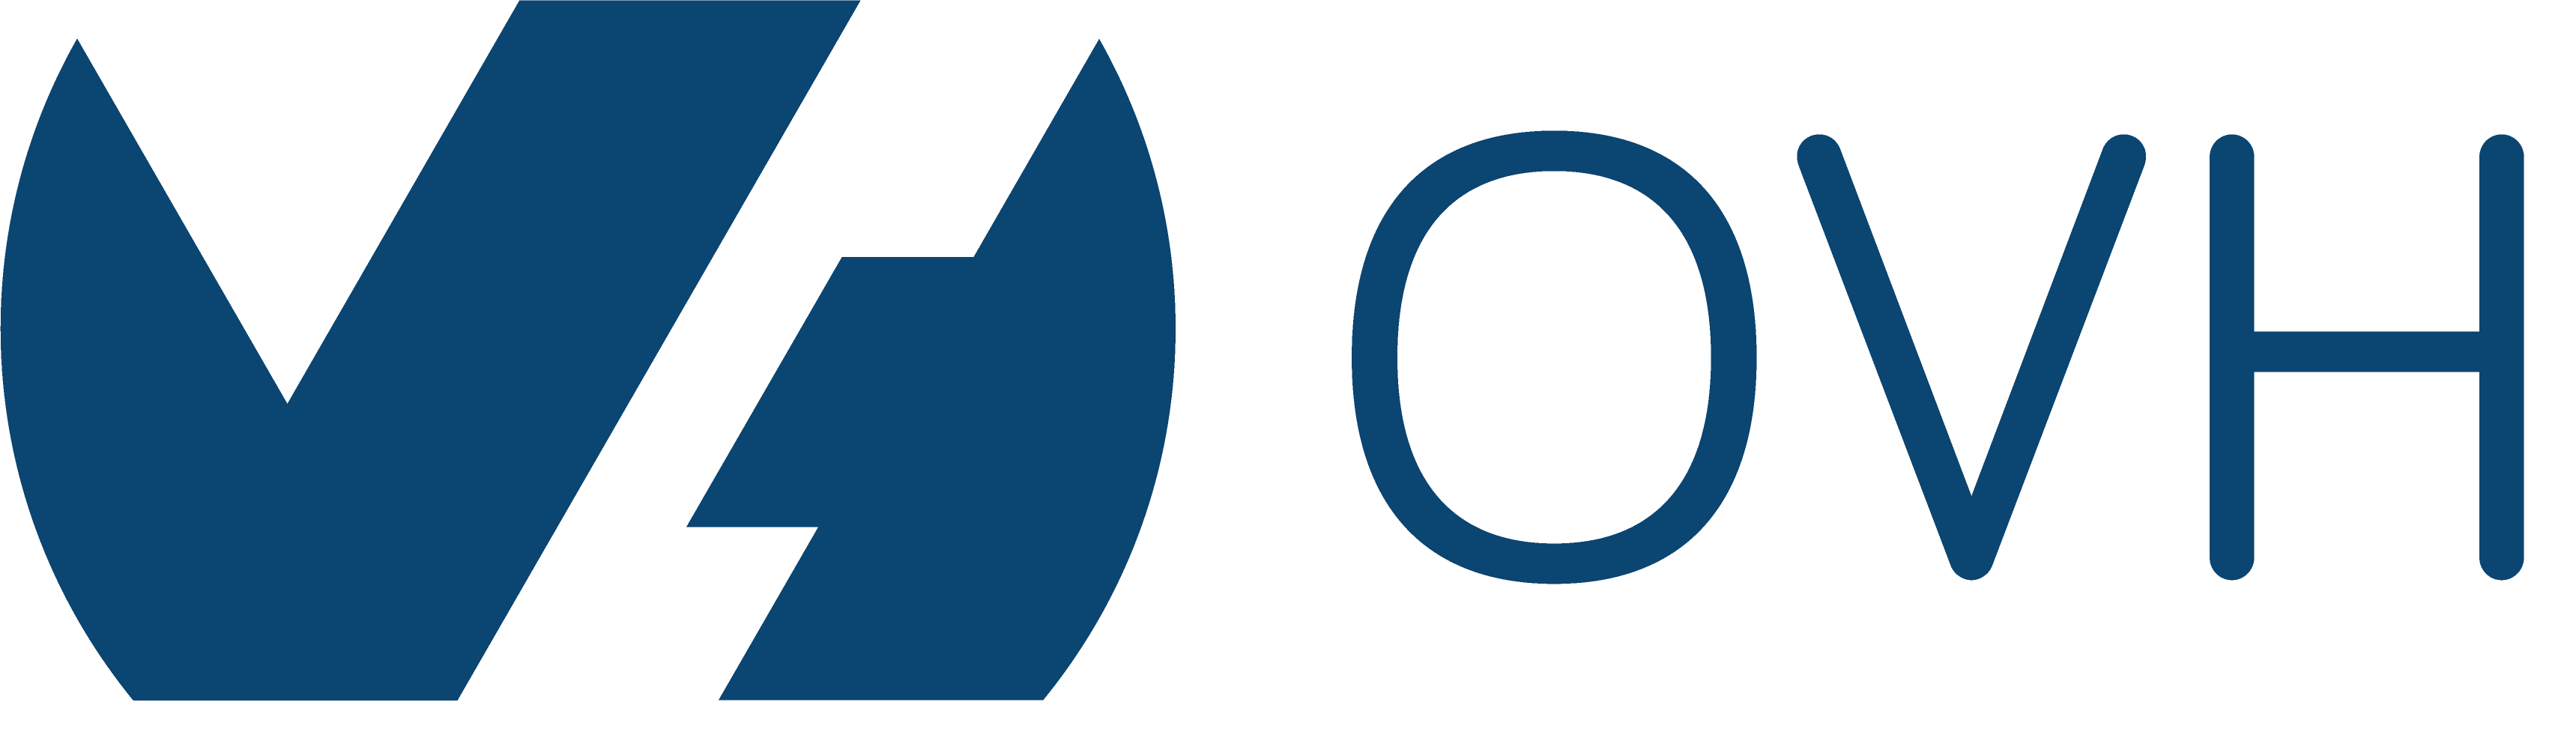 crowbarcode logo